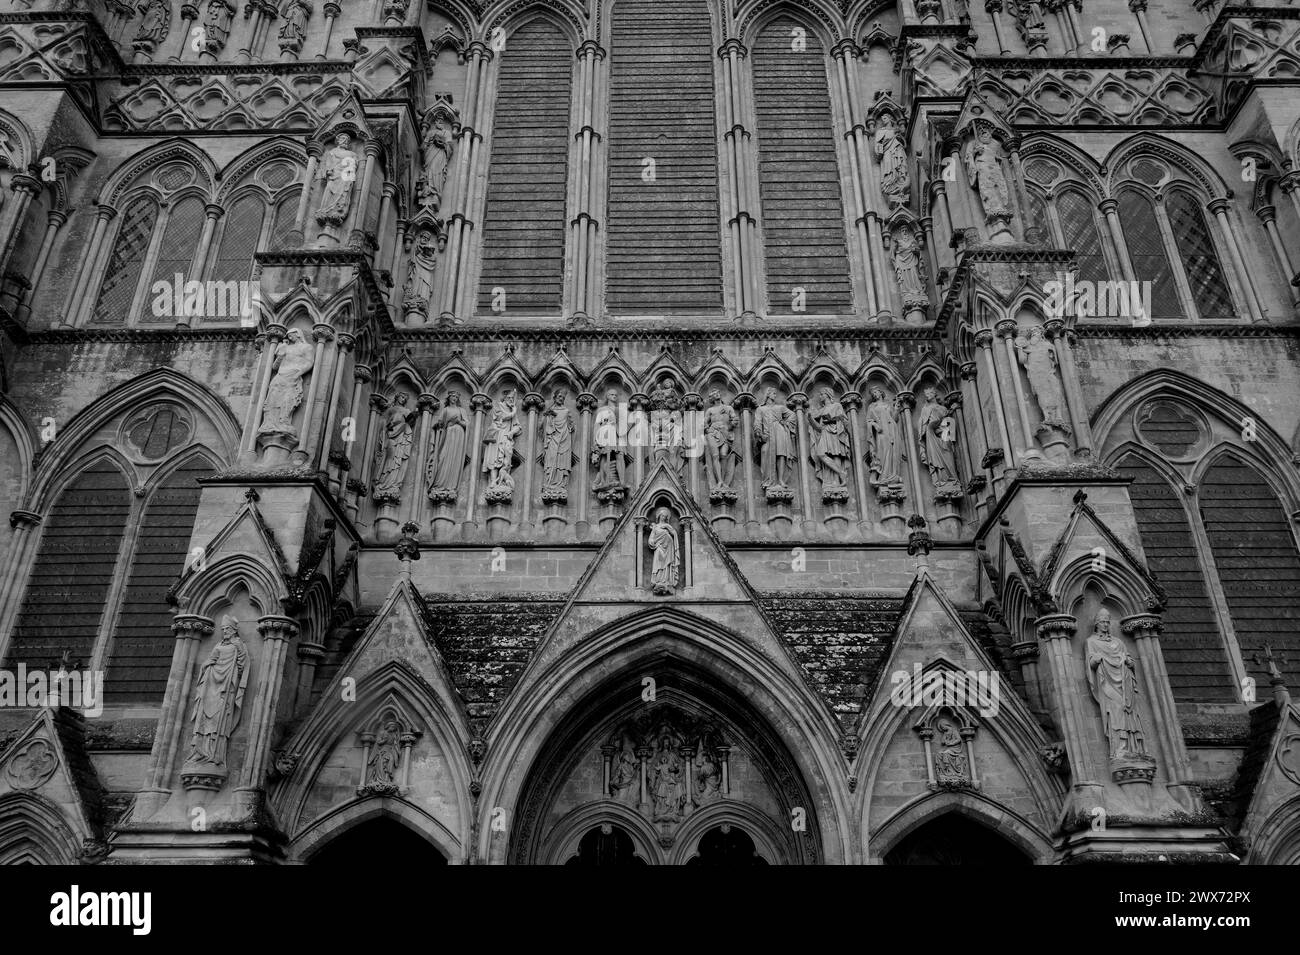 Schwarz-weiße Kathedrale von Salisbury, mittelalterliche gotische Architektur, West Door & Großbritanniens höchster Turm, Wiltshire, Großbritannien Stockfoto